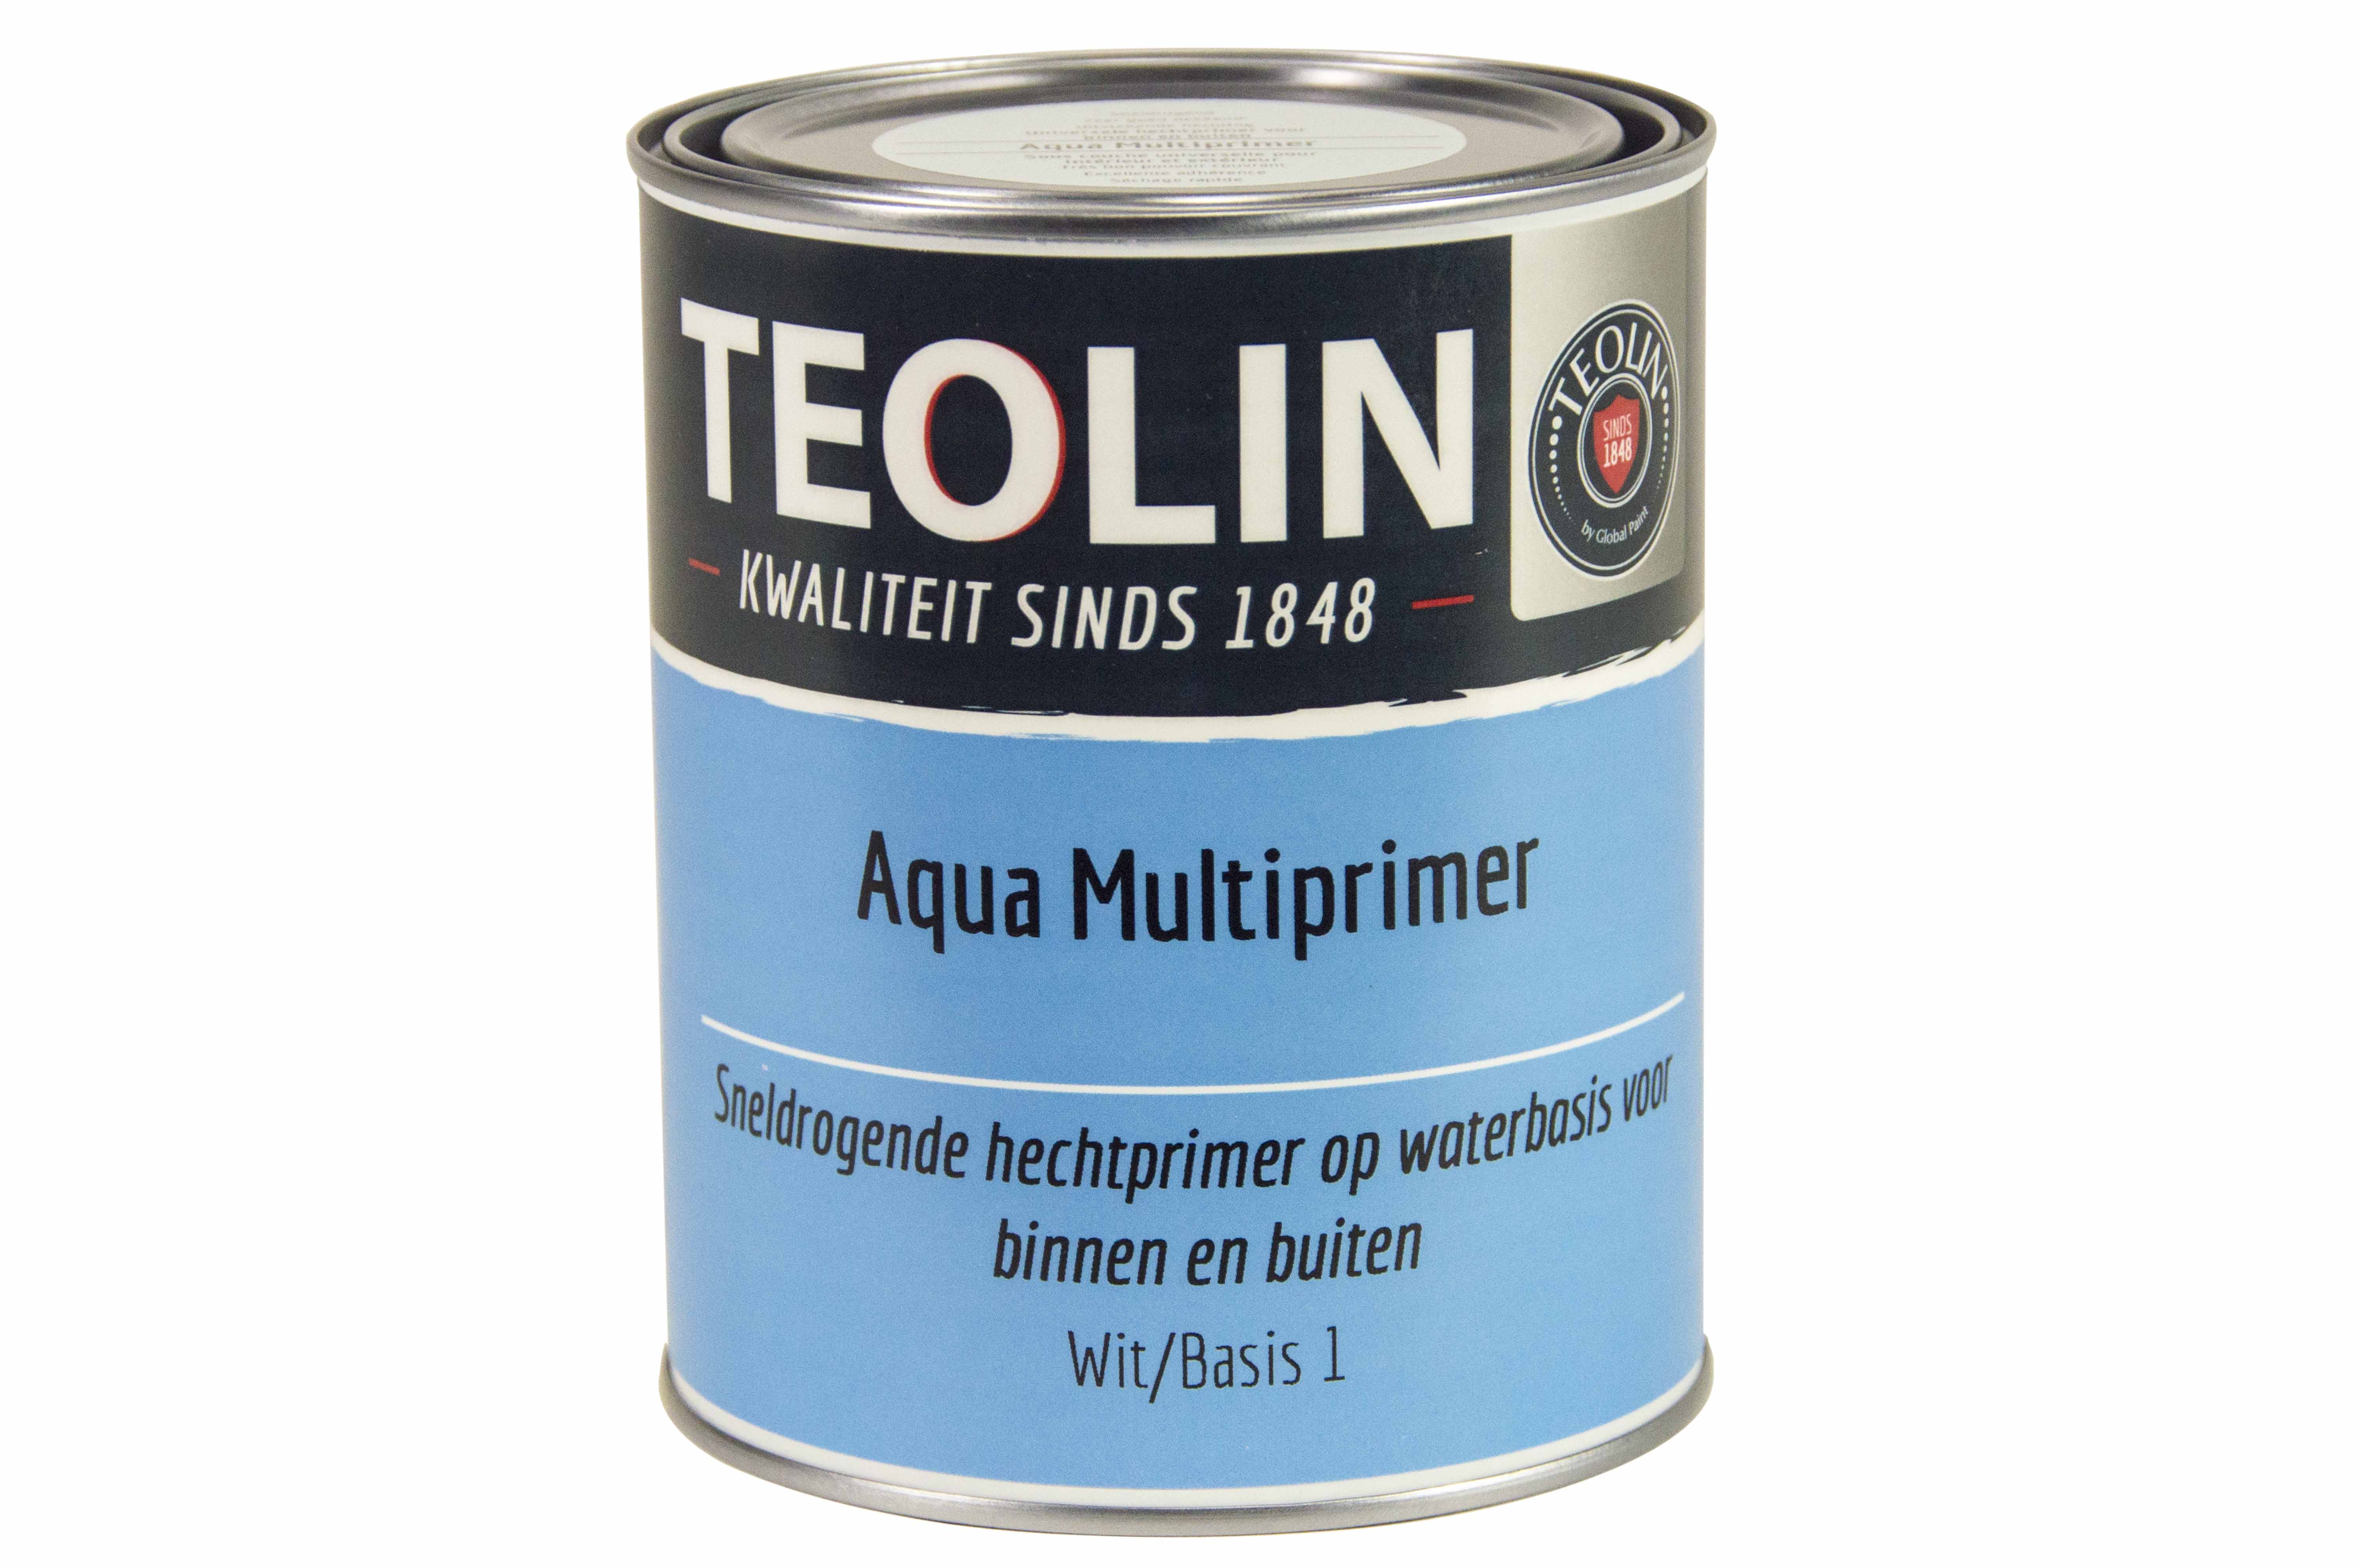 Foto: Teolin Aqua Multiprimer 1Liter Packshot